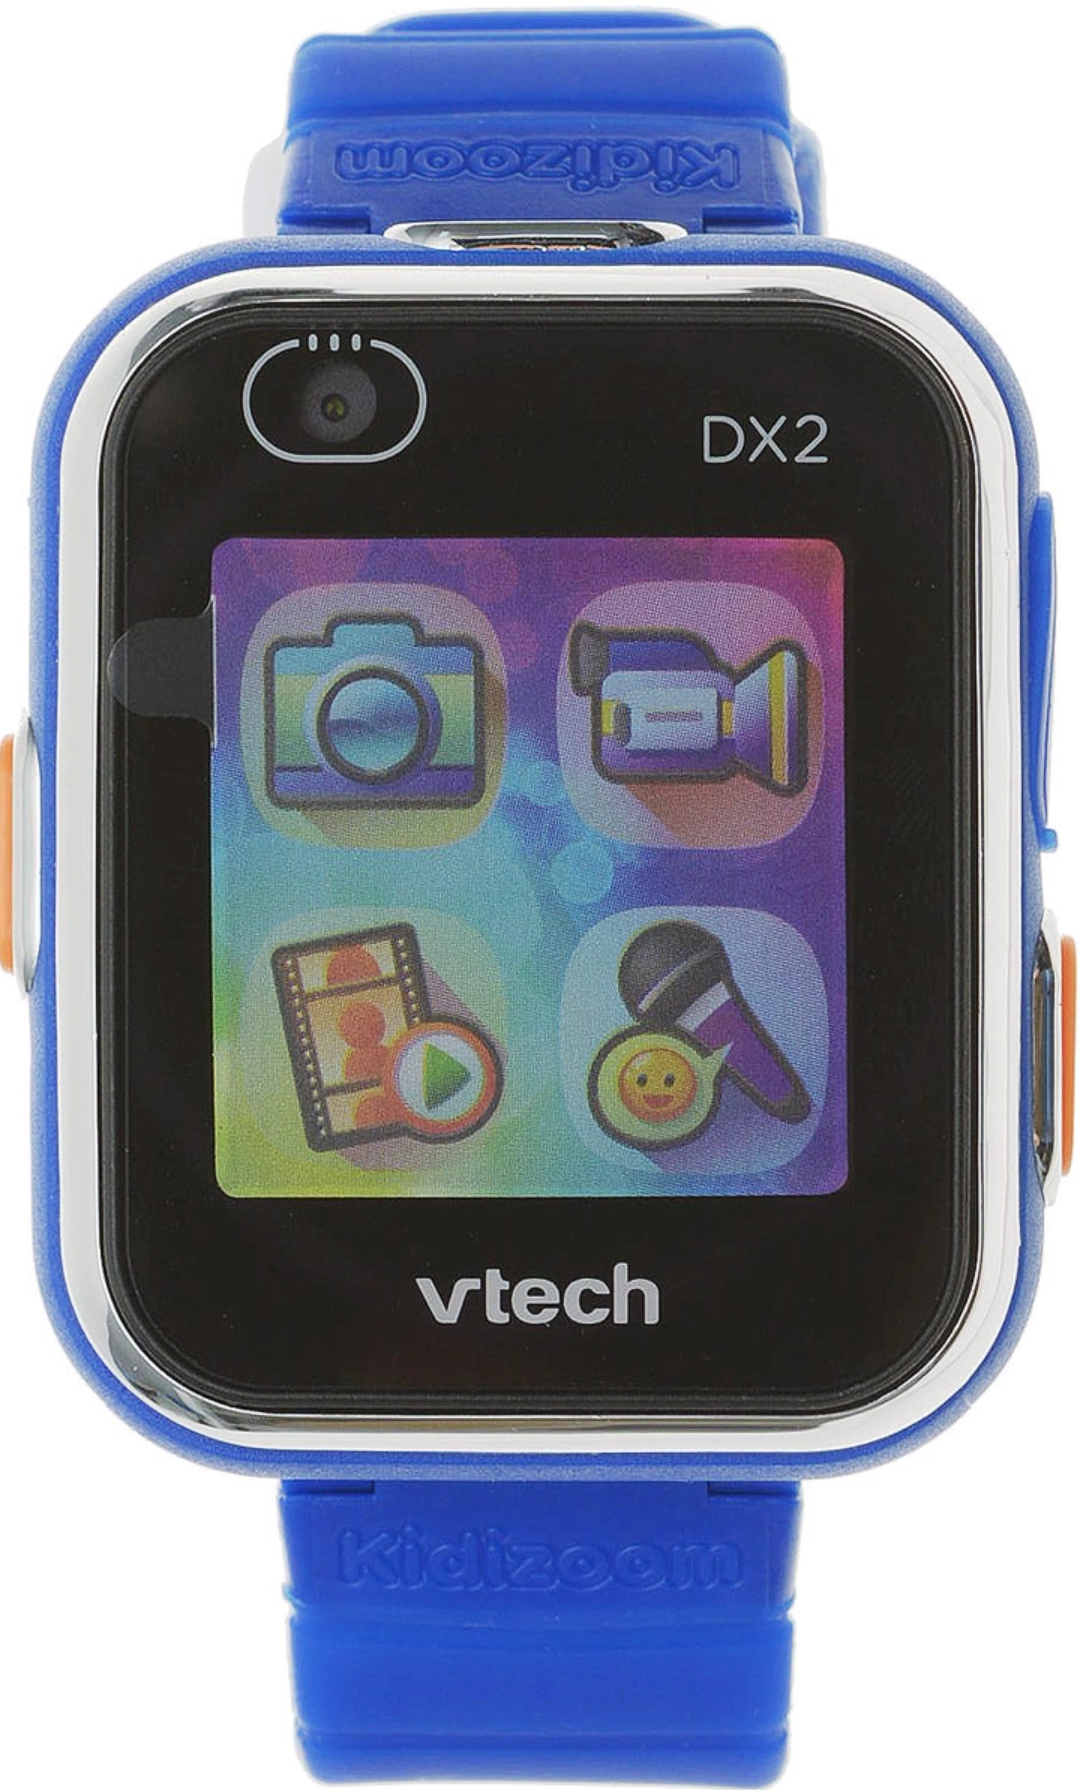 фото Детские наручные часы kidizoom smartwatch dx2 синие vtech